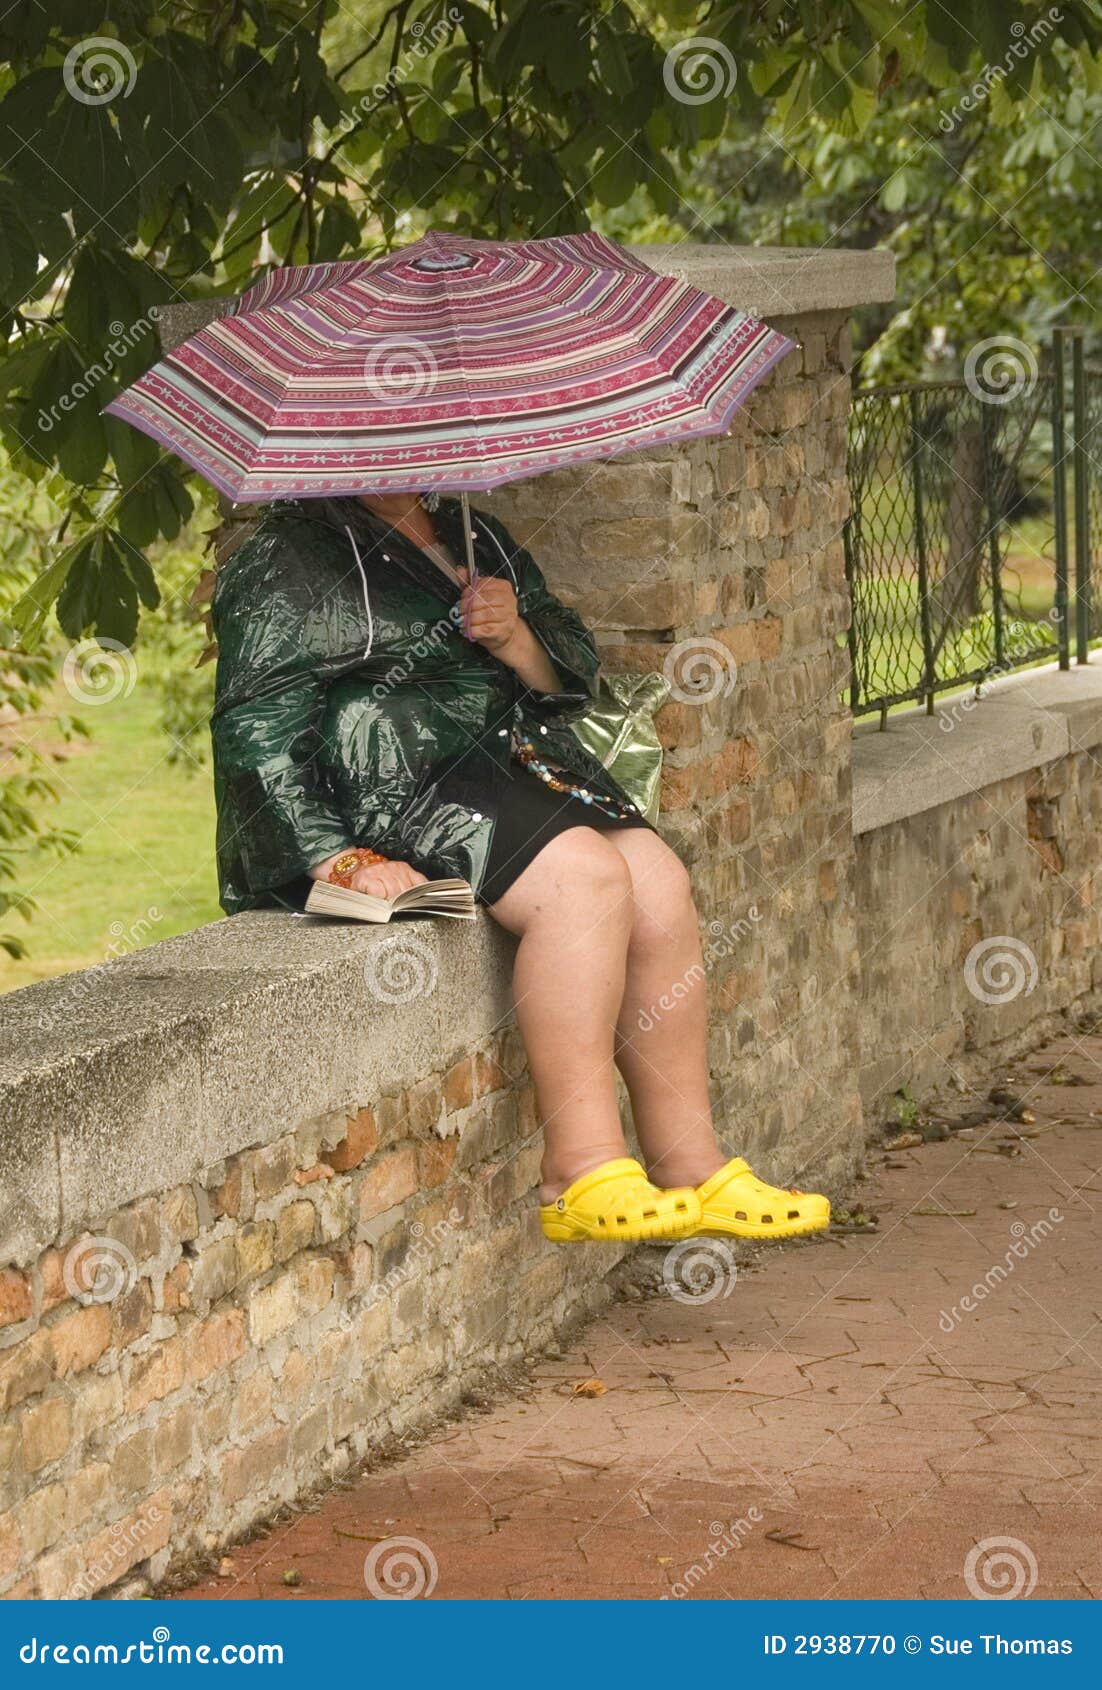 Entspannung im Regen. Person, die im Regen sich entspannt und ihr Buch liest